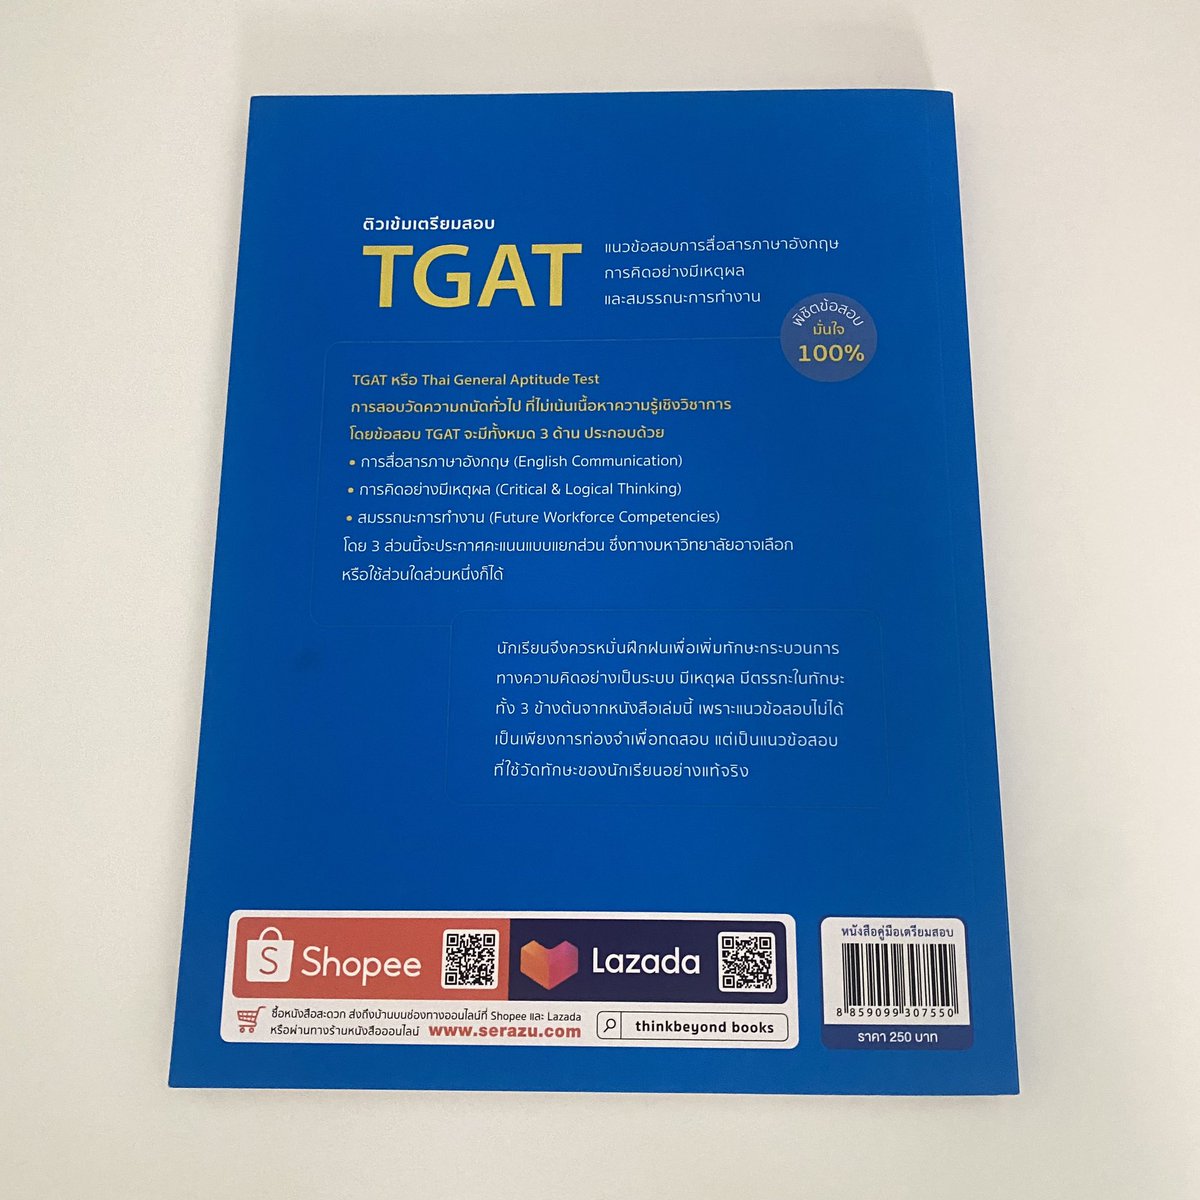 🩵 ส่งต่อหนังสือ tgat 🩵
เราใช้ดินสอเขียนไปบางหน้าค่ะ ลบให้เรียบร้อยค่ะ 160 บาทรวมส่ง ✅
สนใจ dm ได้เลยค่ะ
#dek66 #dek67 #dek68 #dek69 #ส่งต่อหนังสือเตรียมสอบ #ส่งต่อหนังสือ #วันนี้dek67ทําอะไร #วันนี้dek68ทําอะไร #TGAT #ALevel #ALevel66 #tgat66 #TCAS66 #TCAS67 #หนังสือมือสอง